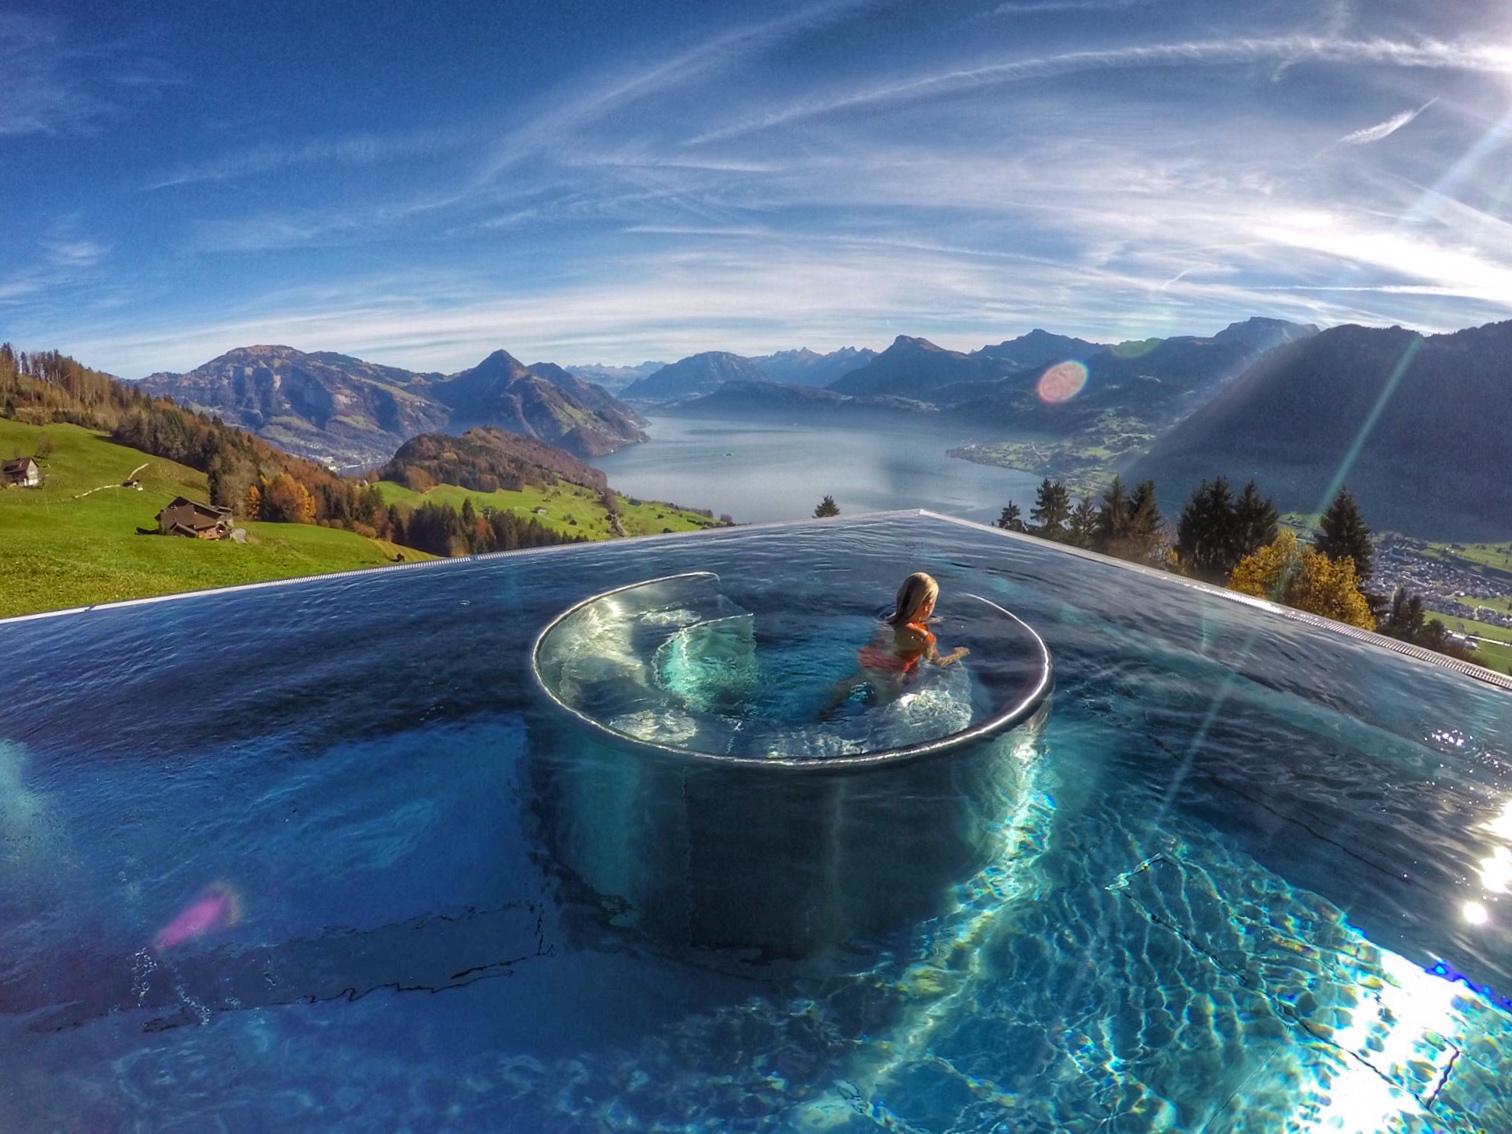 As piscinas mais lindas do mundo - Villa Honegg - Suiça